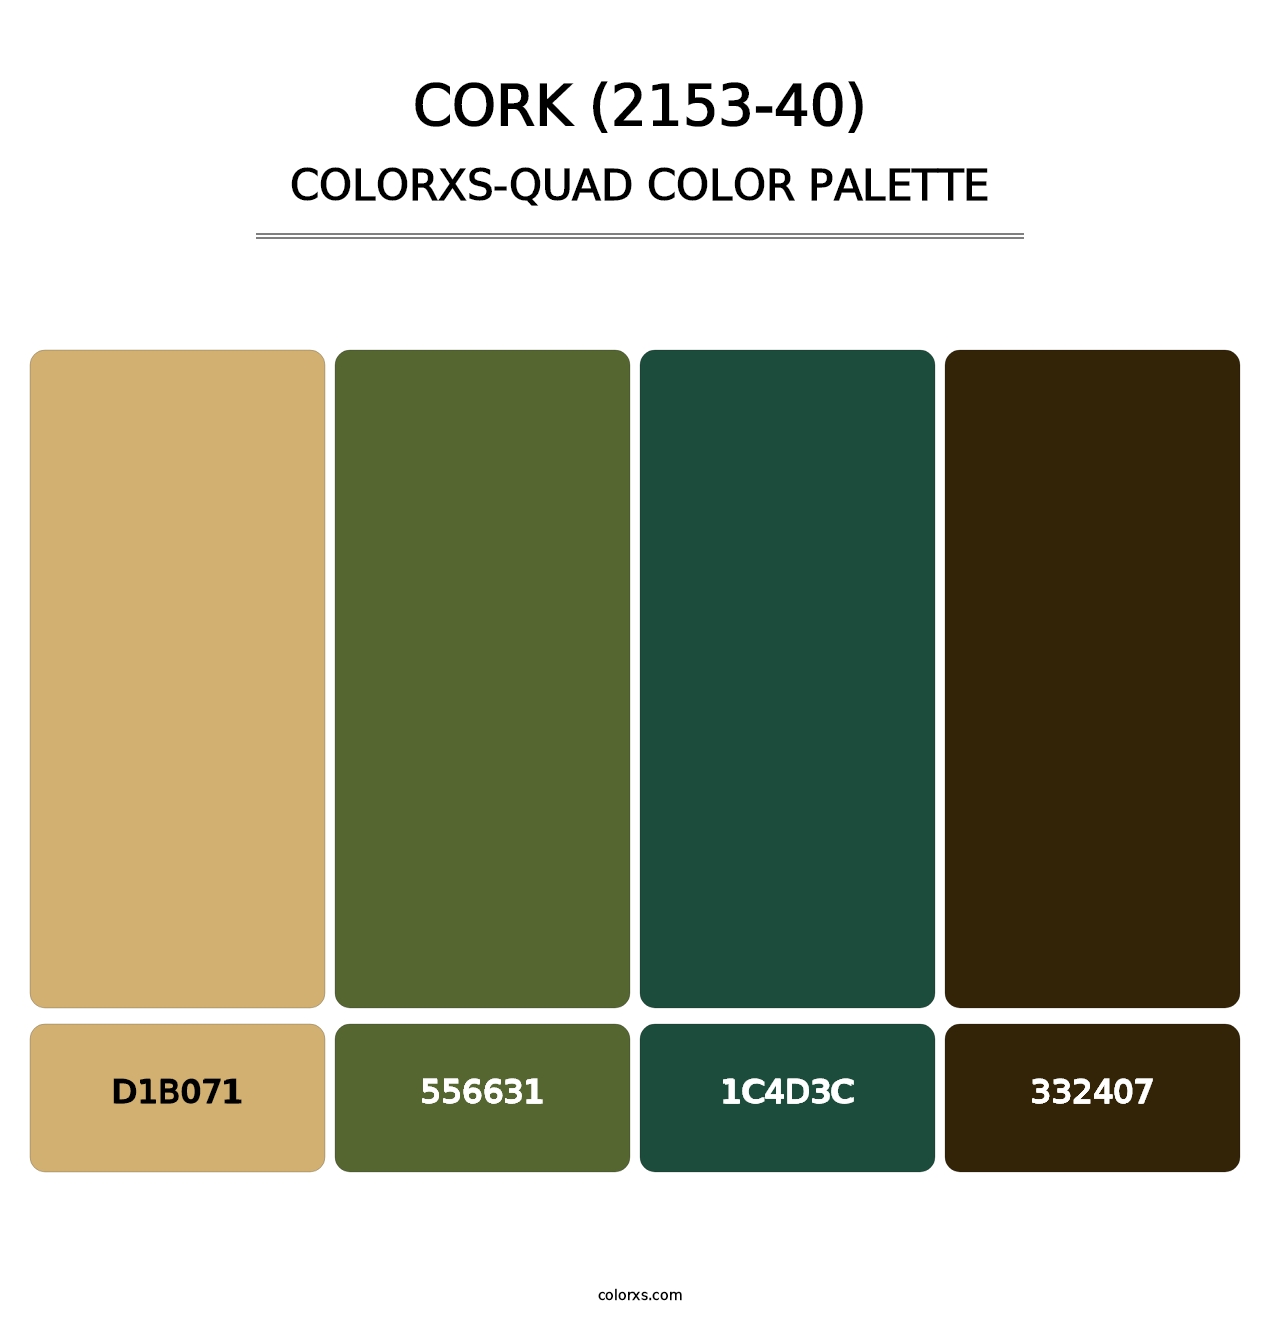 Cork (2153-40) - Colorxs Quad Palette